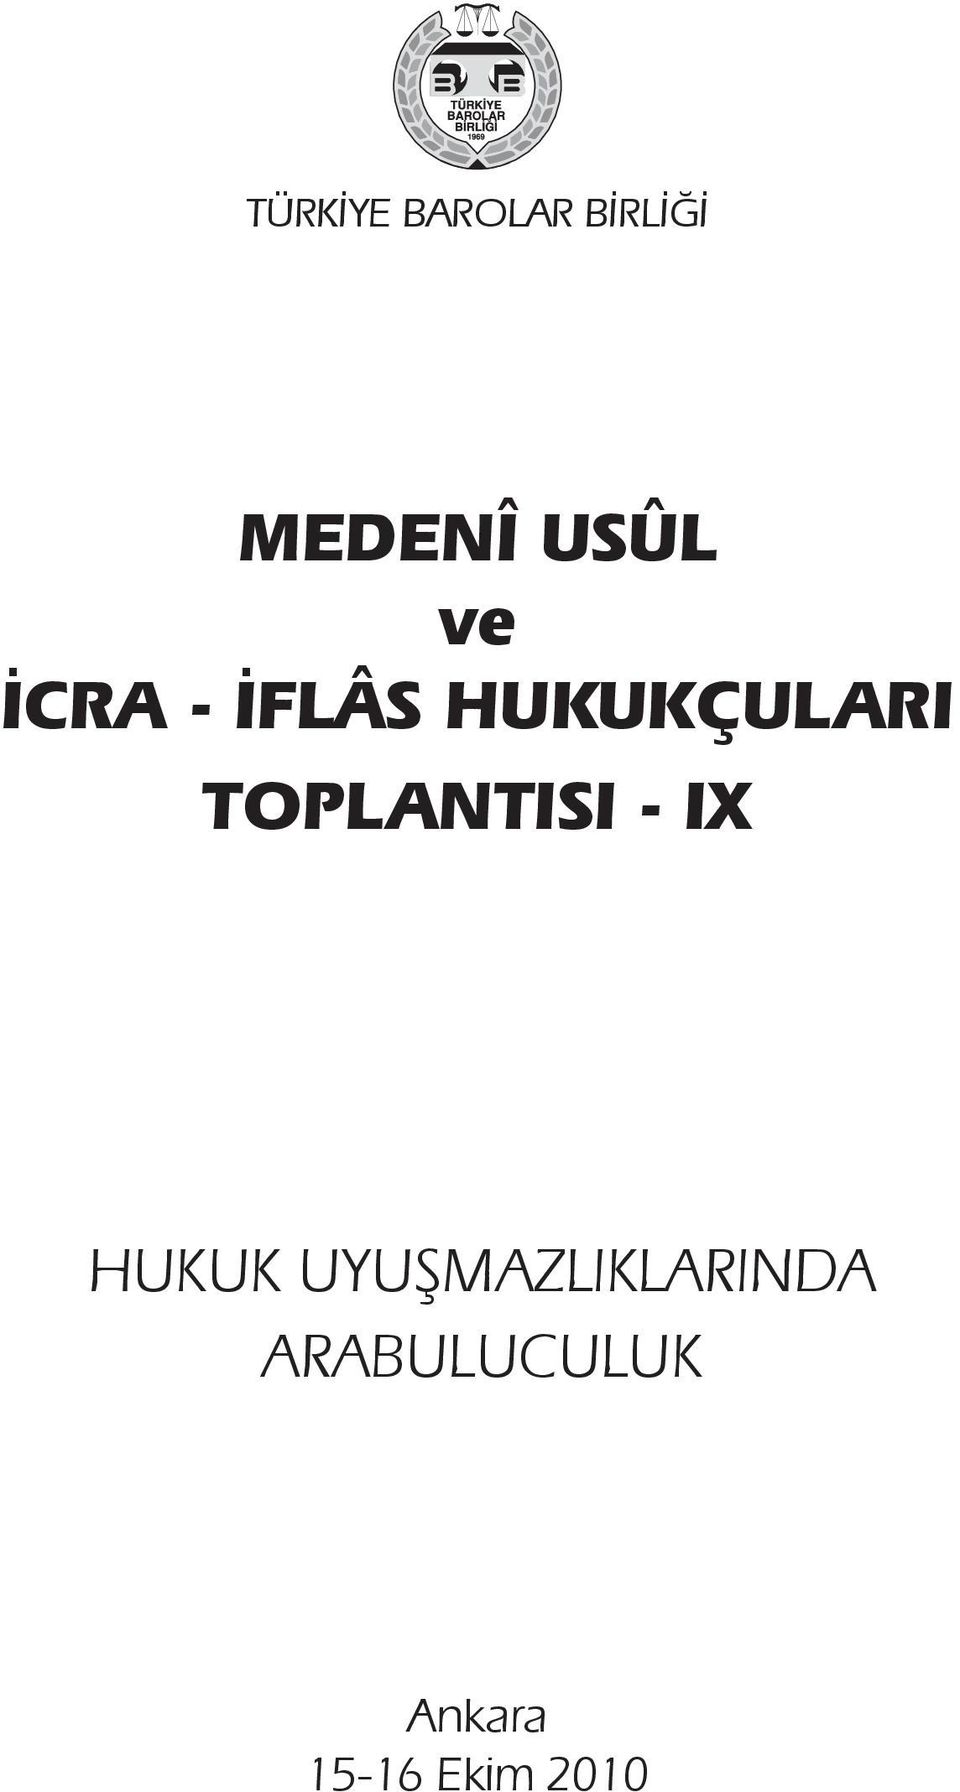 TOPLANTISI - IX HUKUK